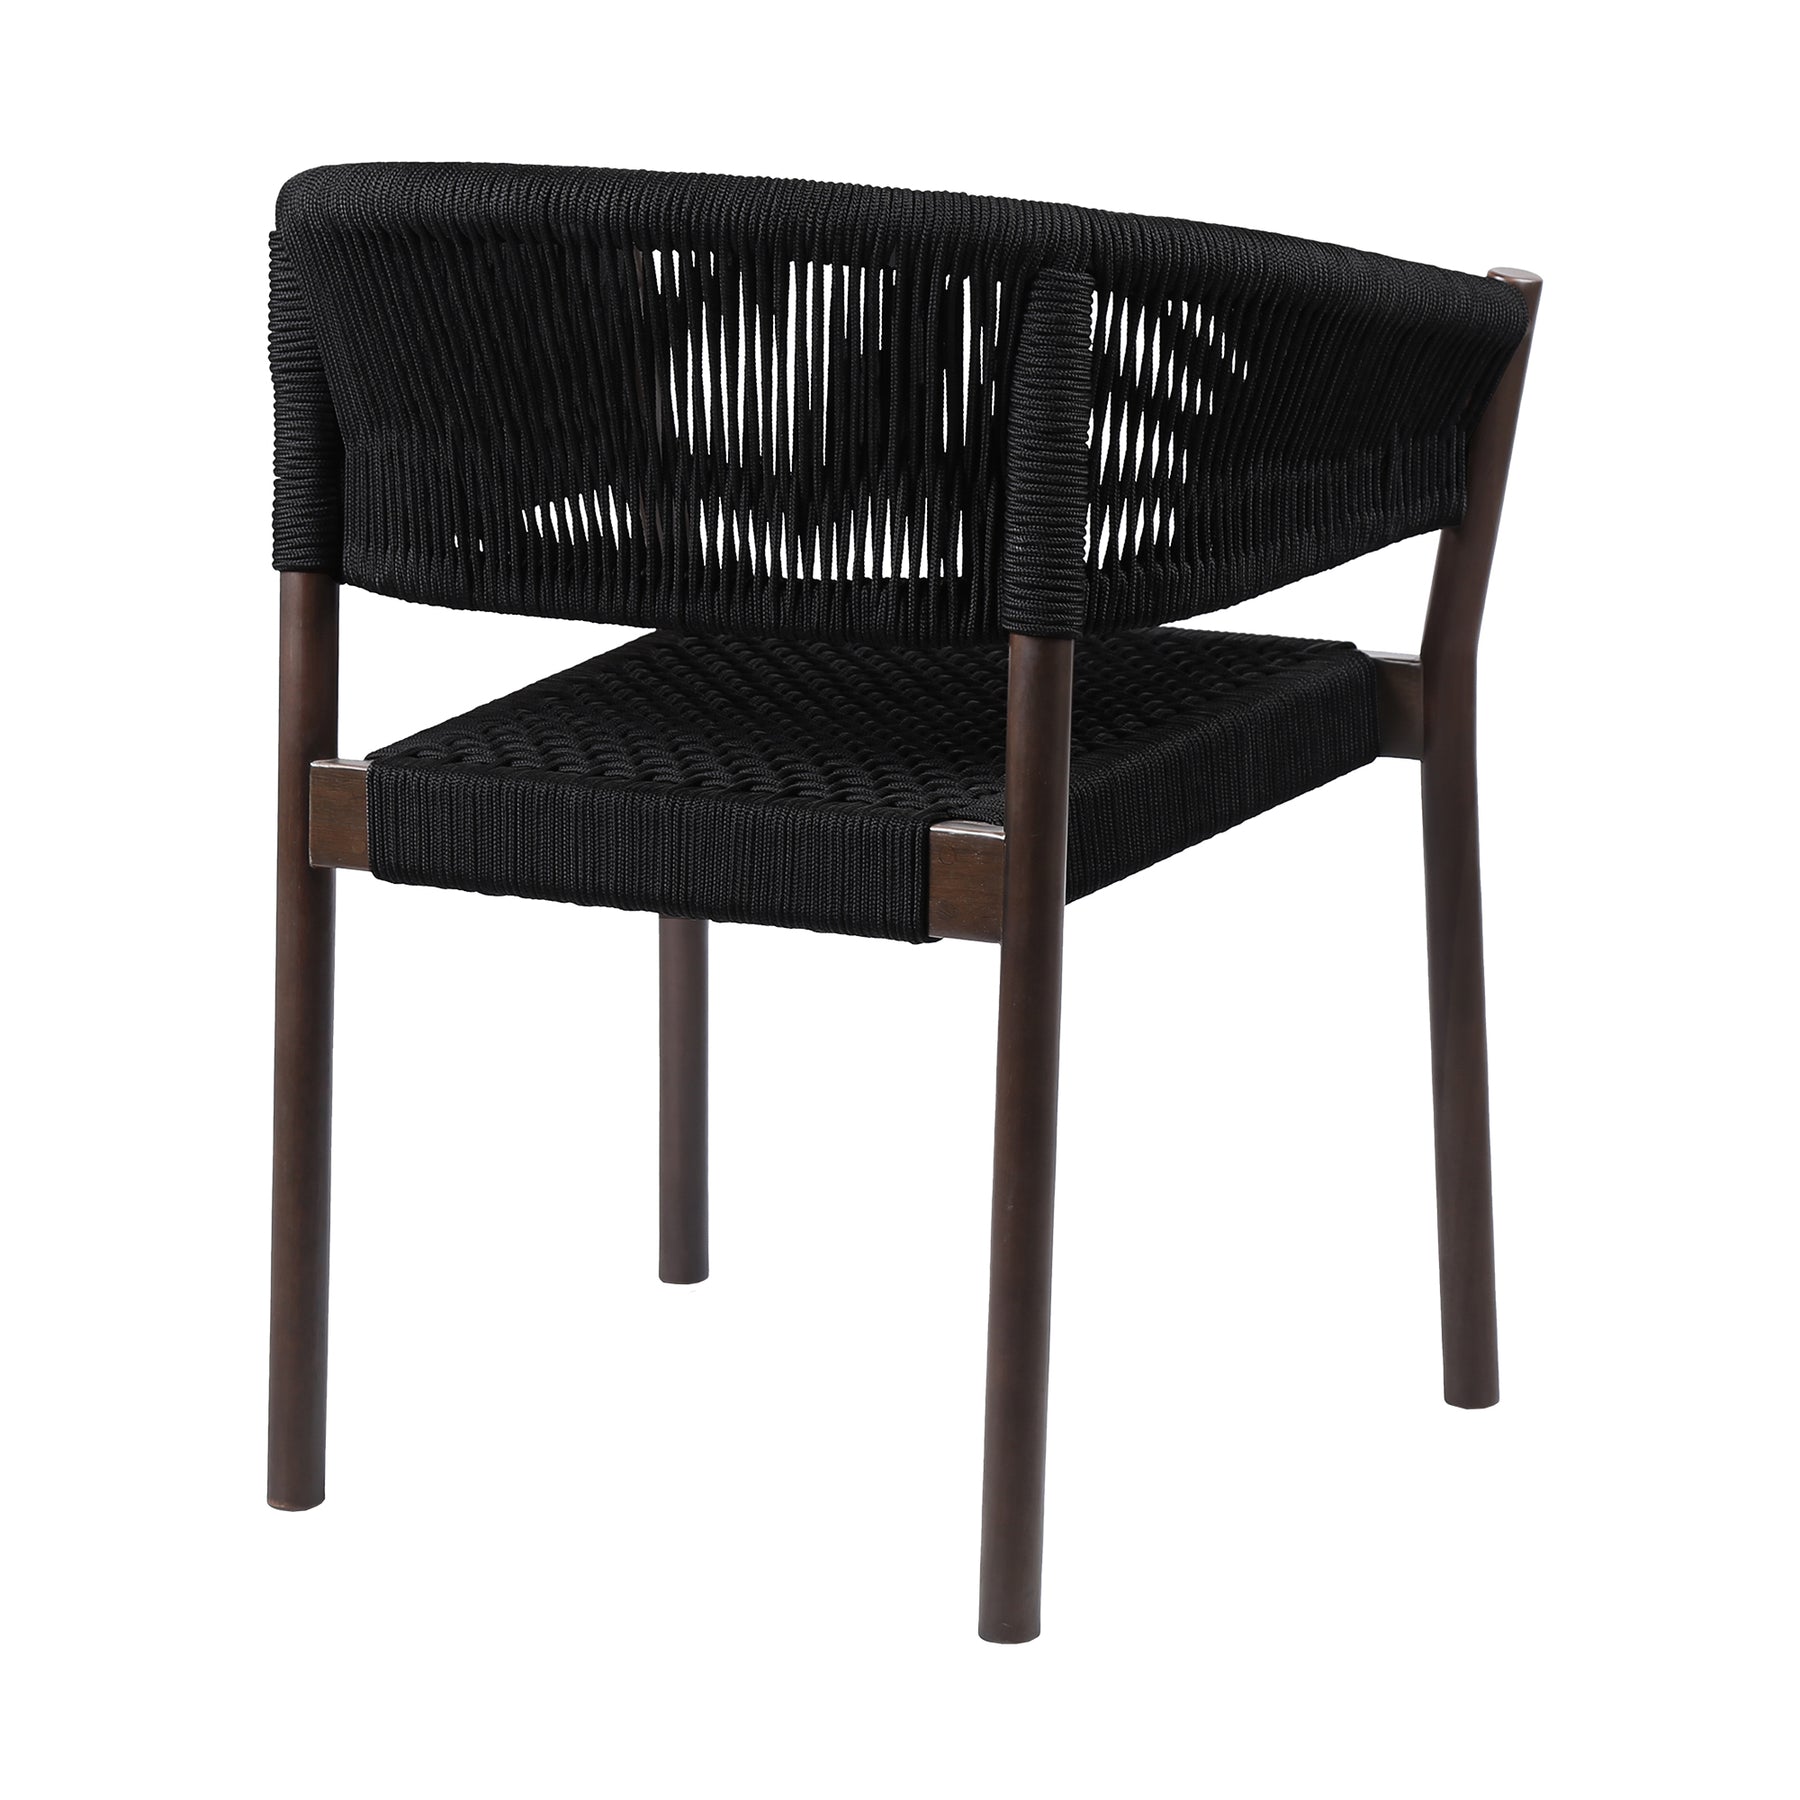 armen Living Doris Indoor Outdoor Dining Chair Eucalyptus Wood Rope-Set of 2, Dark/Black